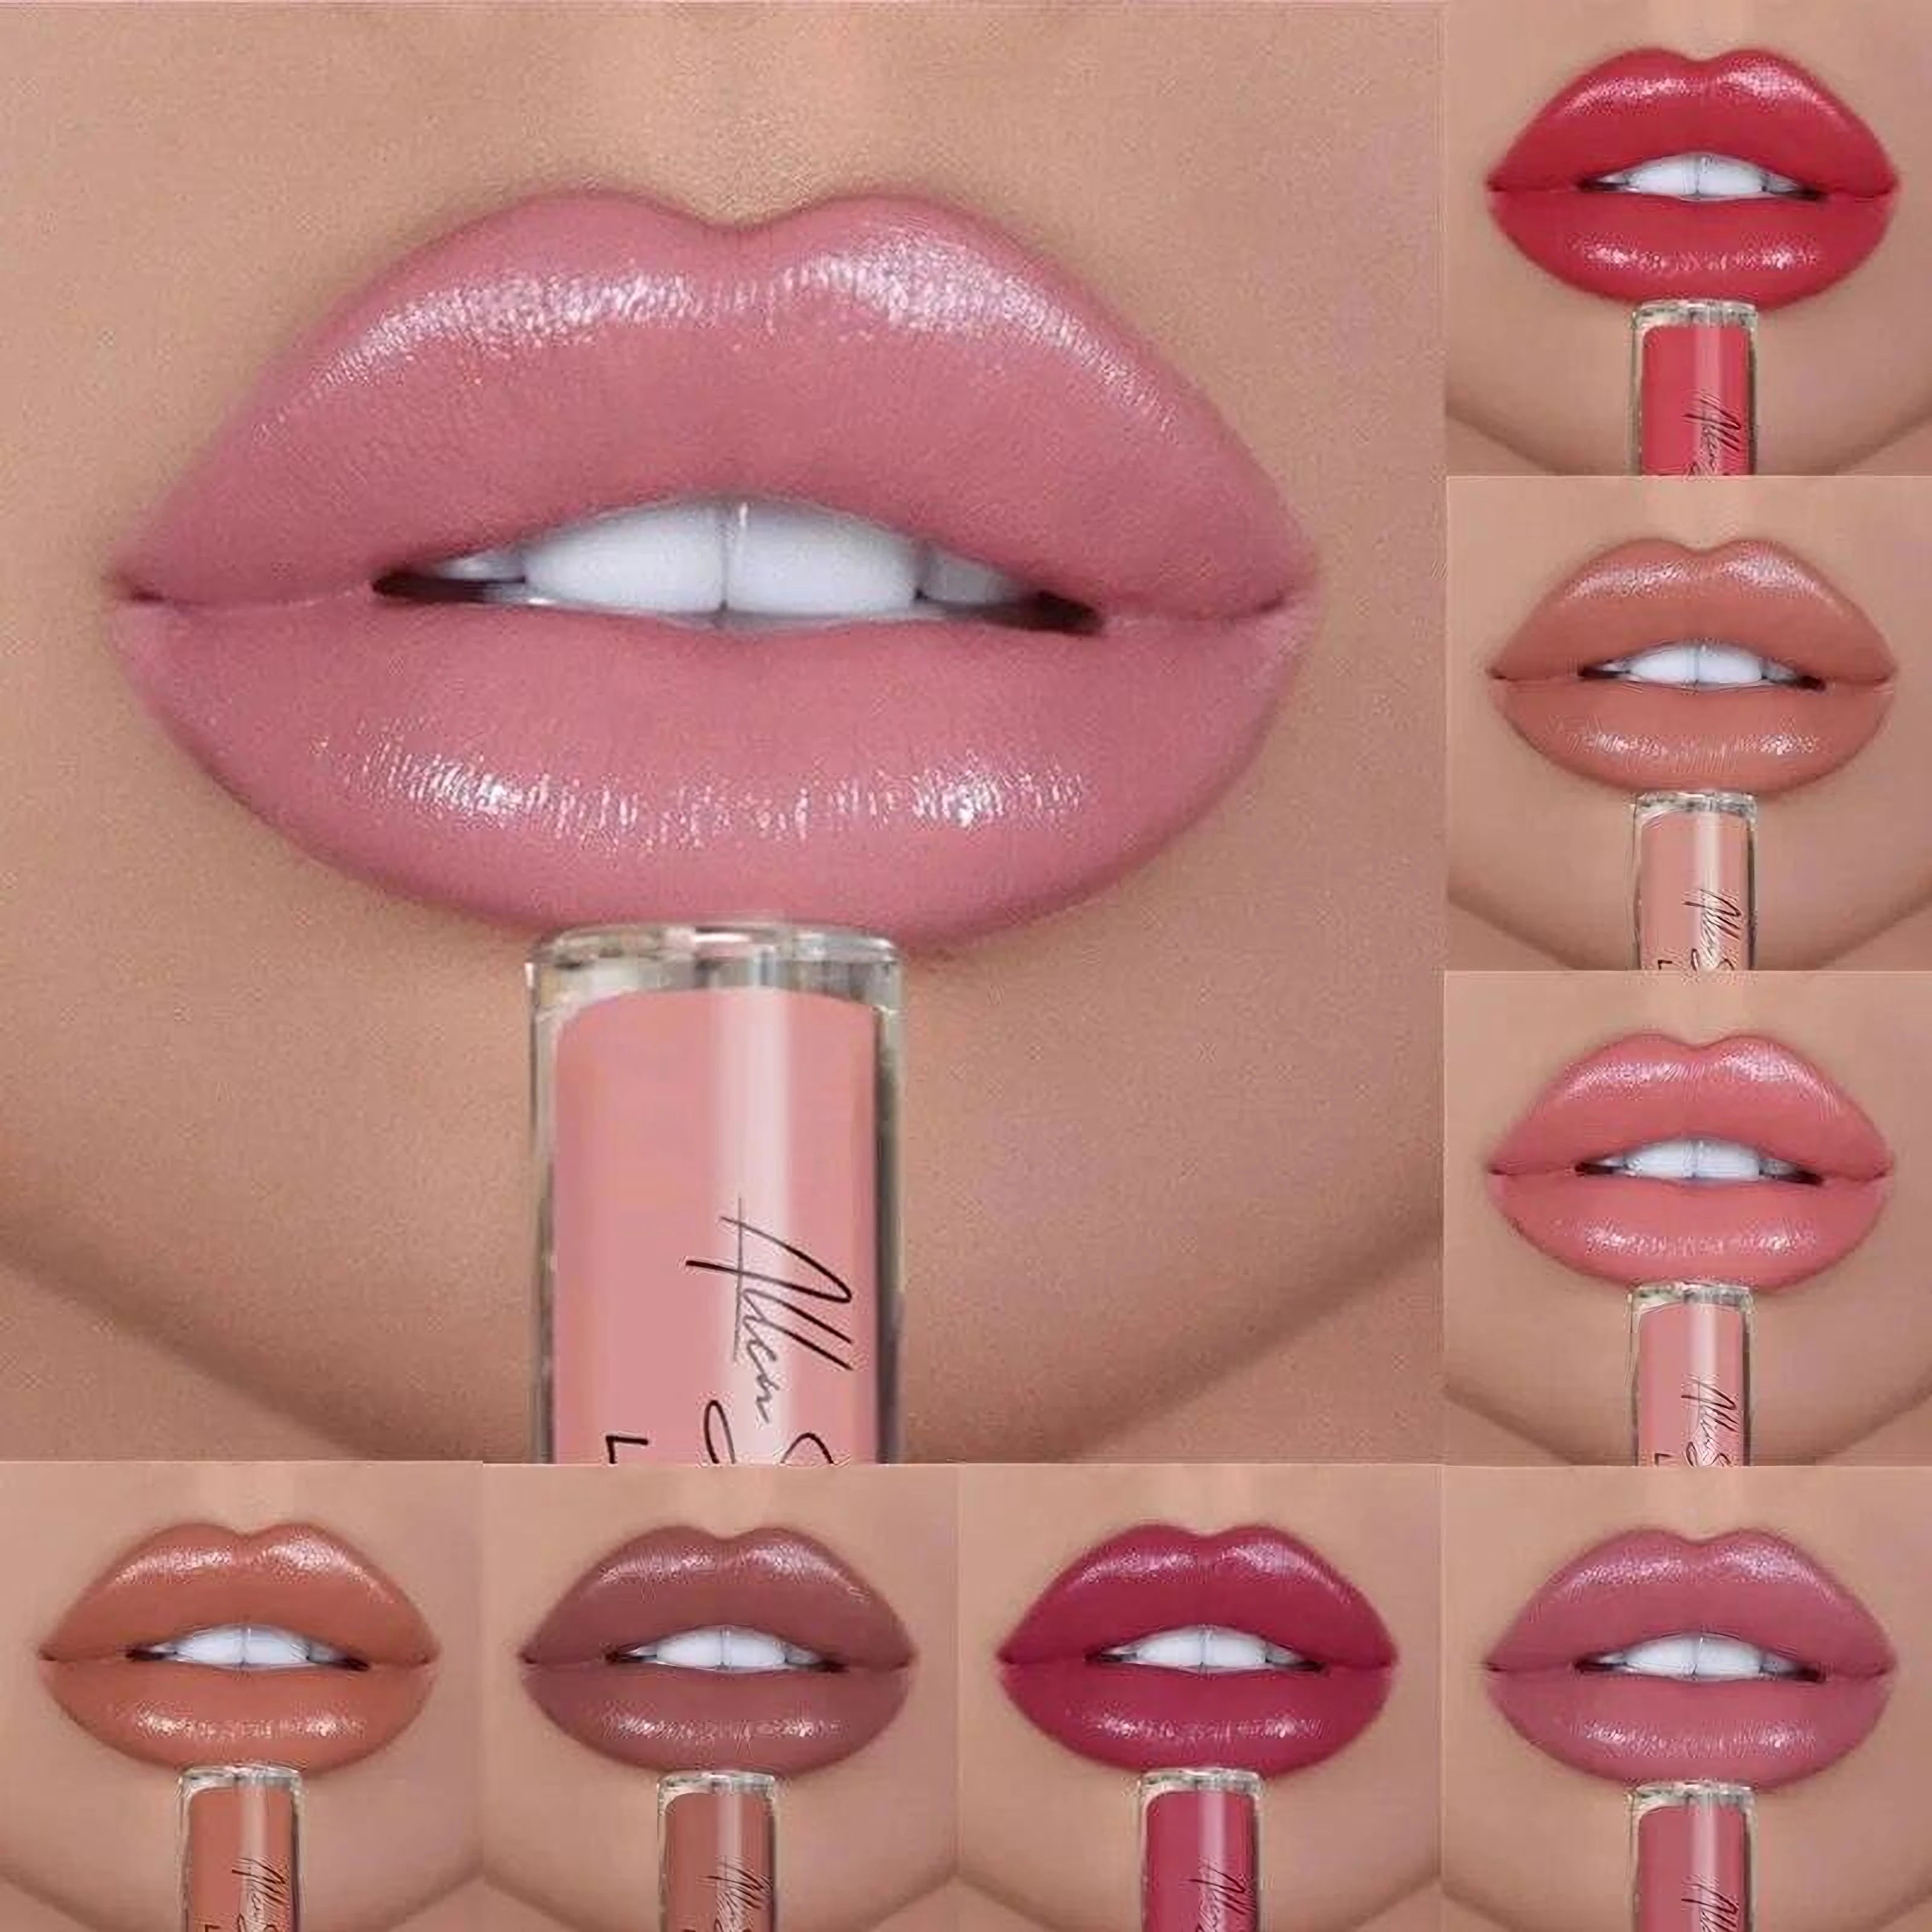 12 Colors Waterproof Lipstick: Vivid shades, long-lasting.